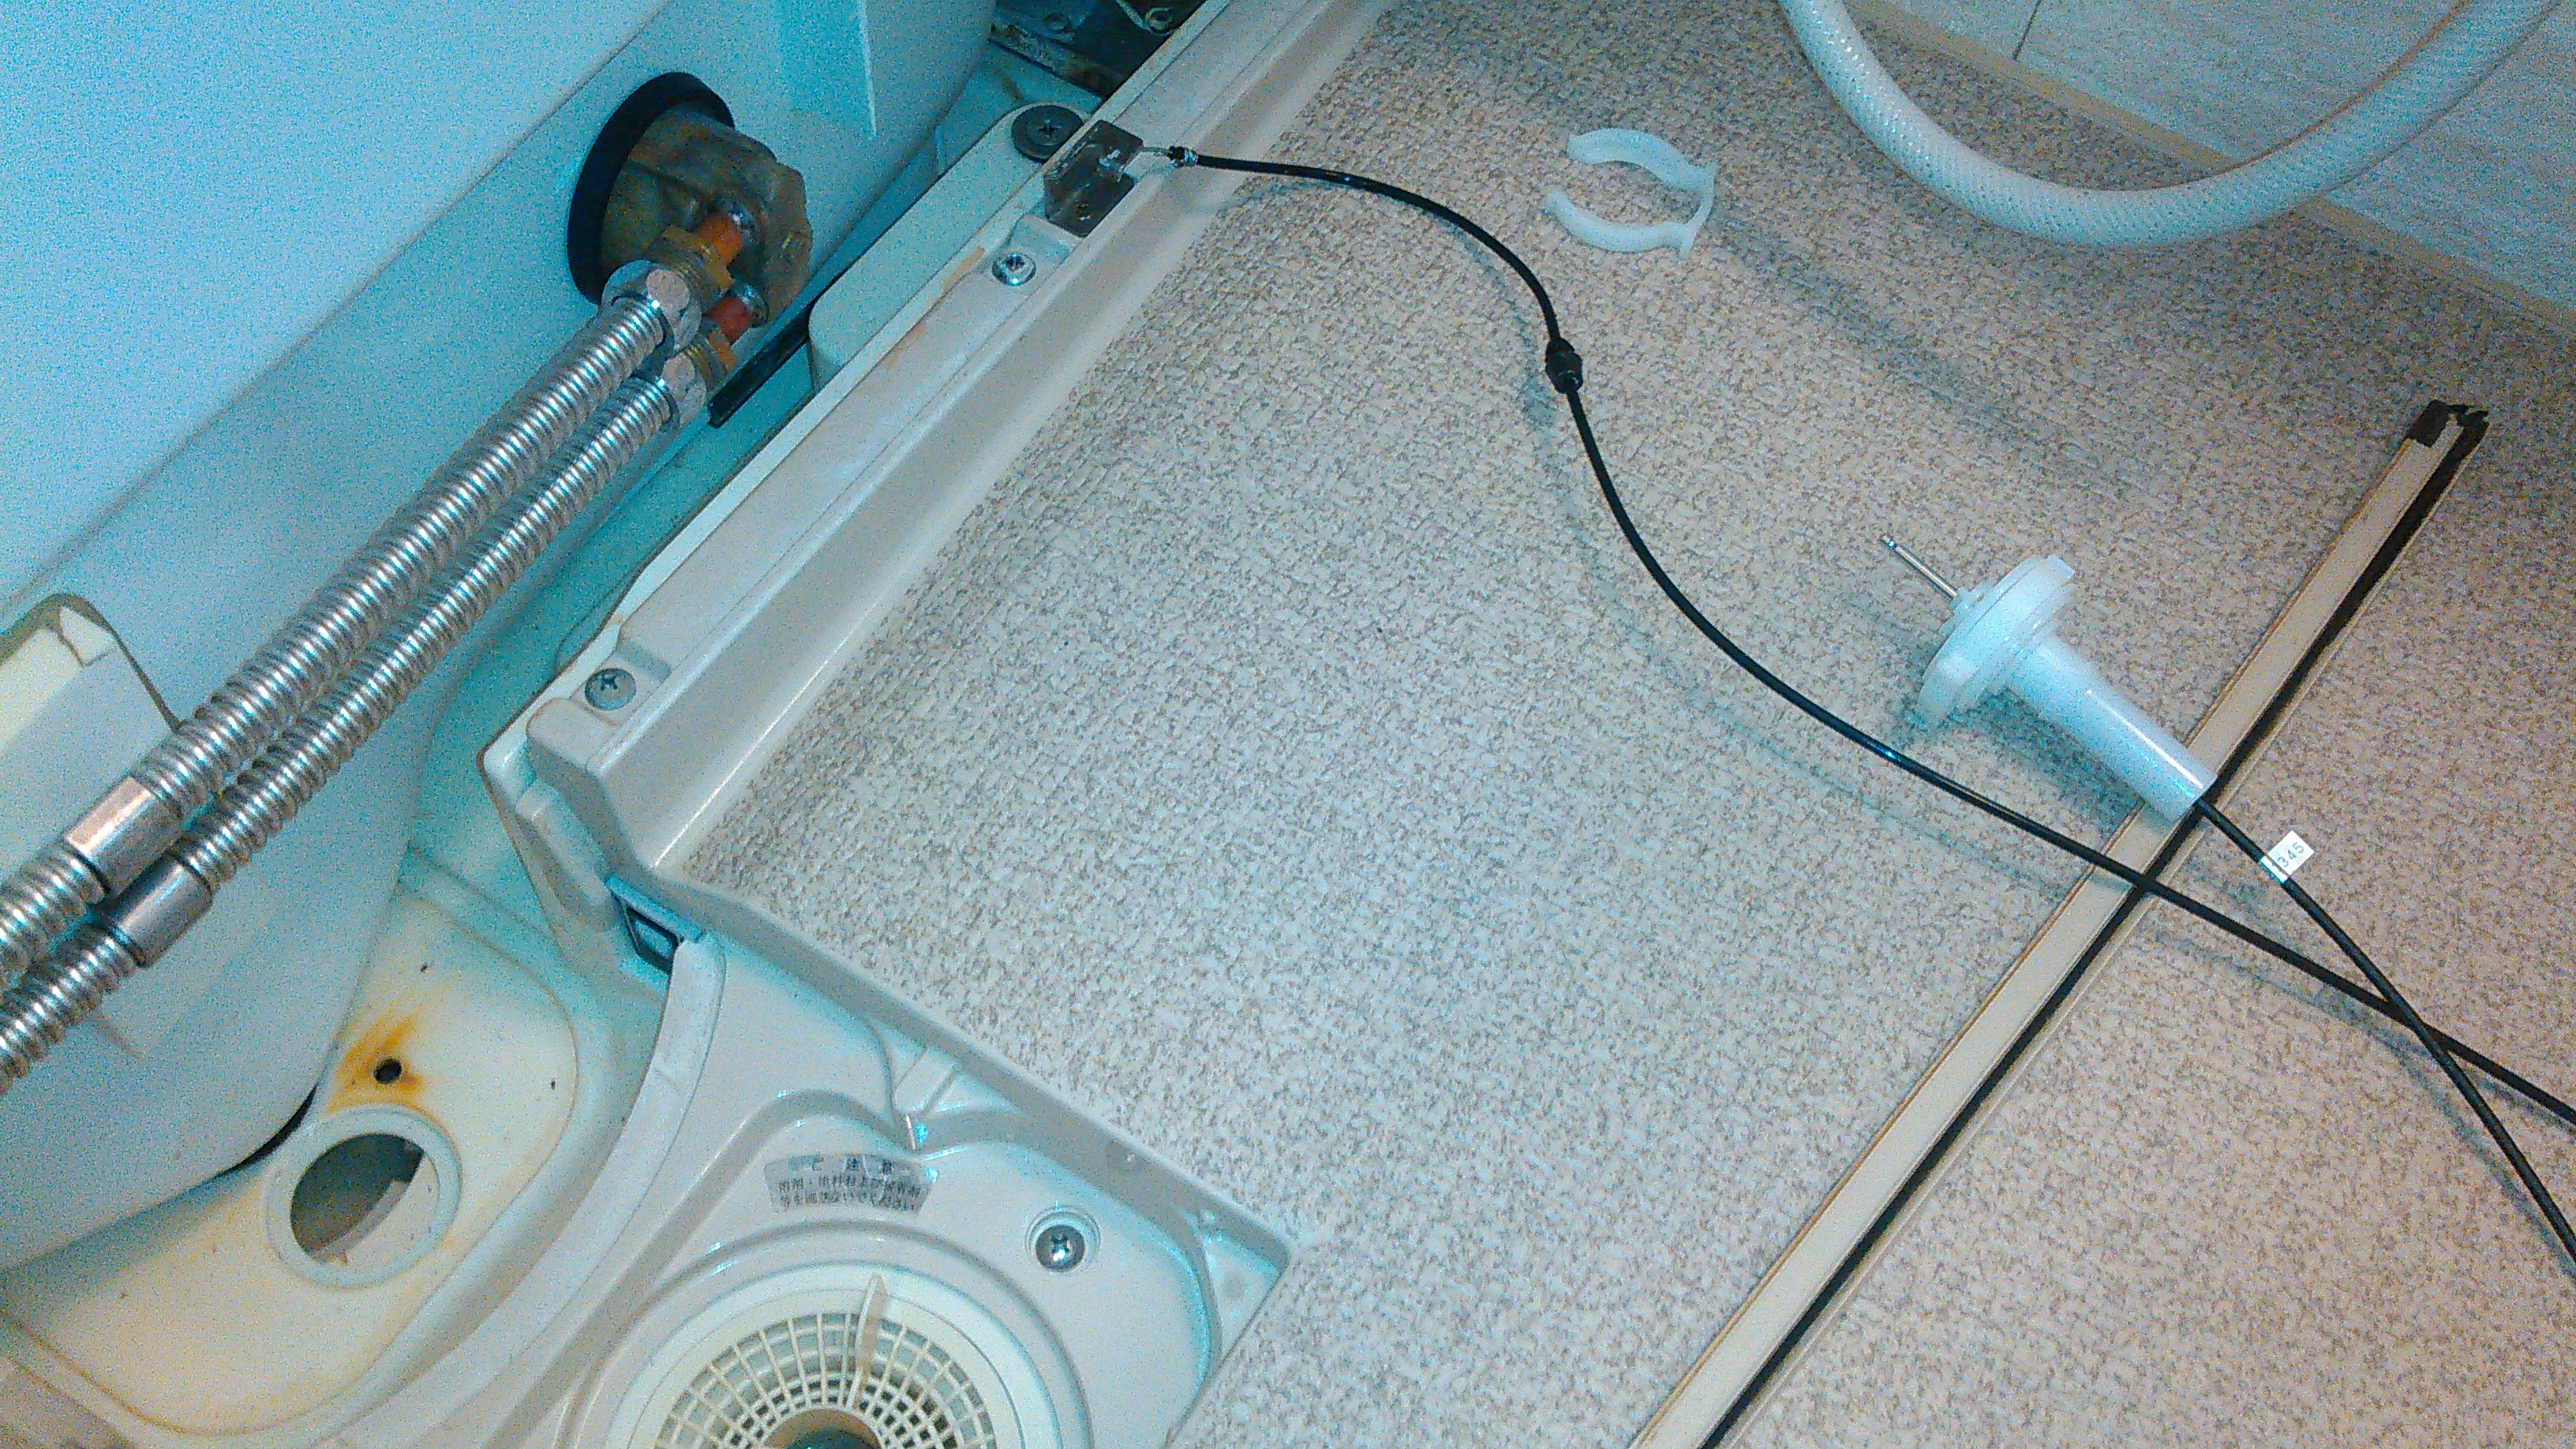 ポップアップ排水口のワイヤー交換 洗面台やトイレ 給湯器 エアコンなどの交換なら便利屋handyman